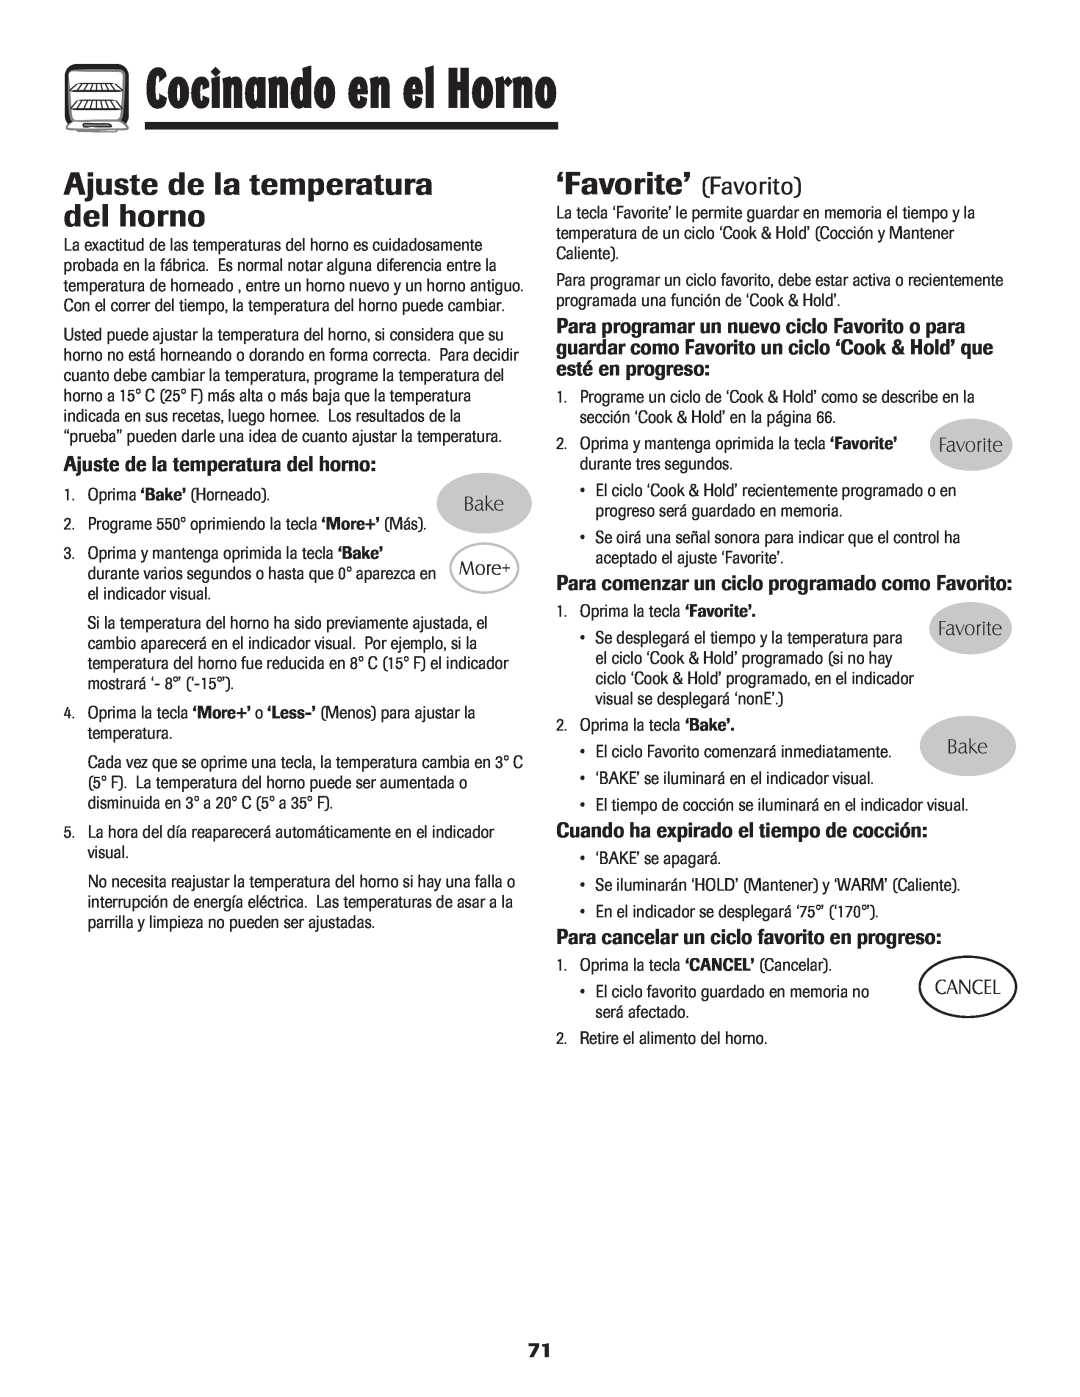 Maytag 700 manual Ajuste de la temperatura del horno, ‘Favorite’ Favorito, Para comenzar un ciclo programado como Favorito 